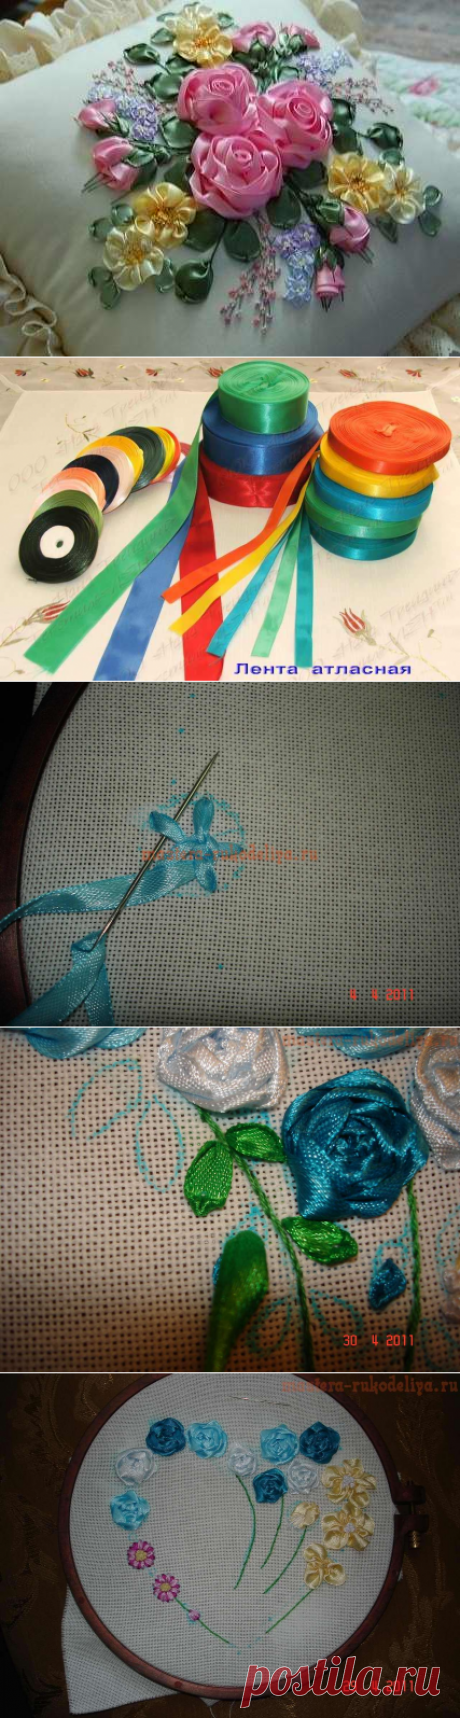 Практический урок по вышивке лентами от Ирины Лысенко.